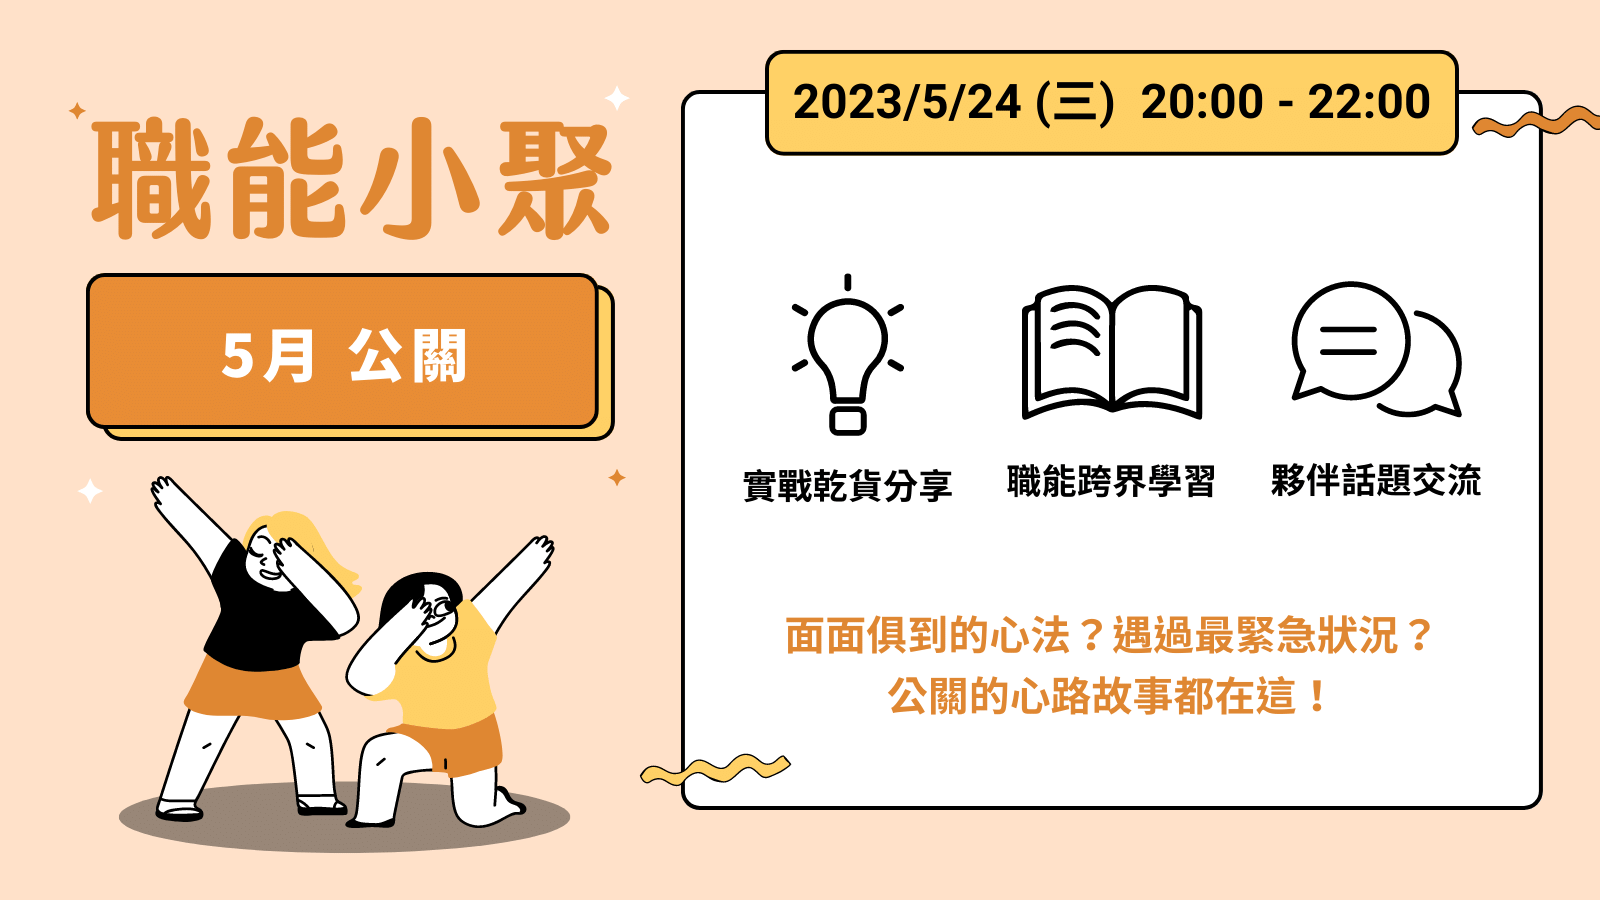 2023年 5 月職能小聚 - 5/24 公關課程封面